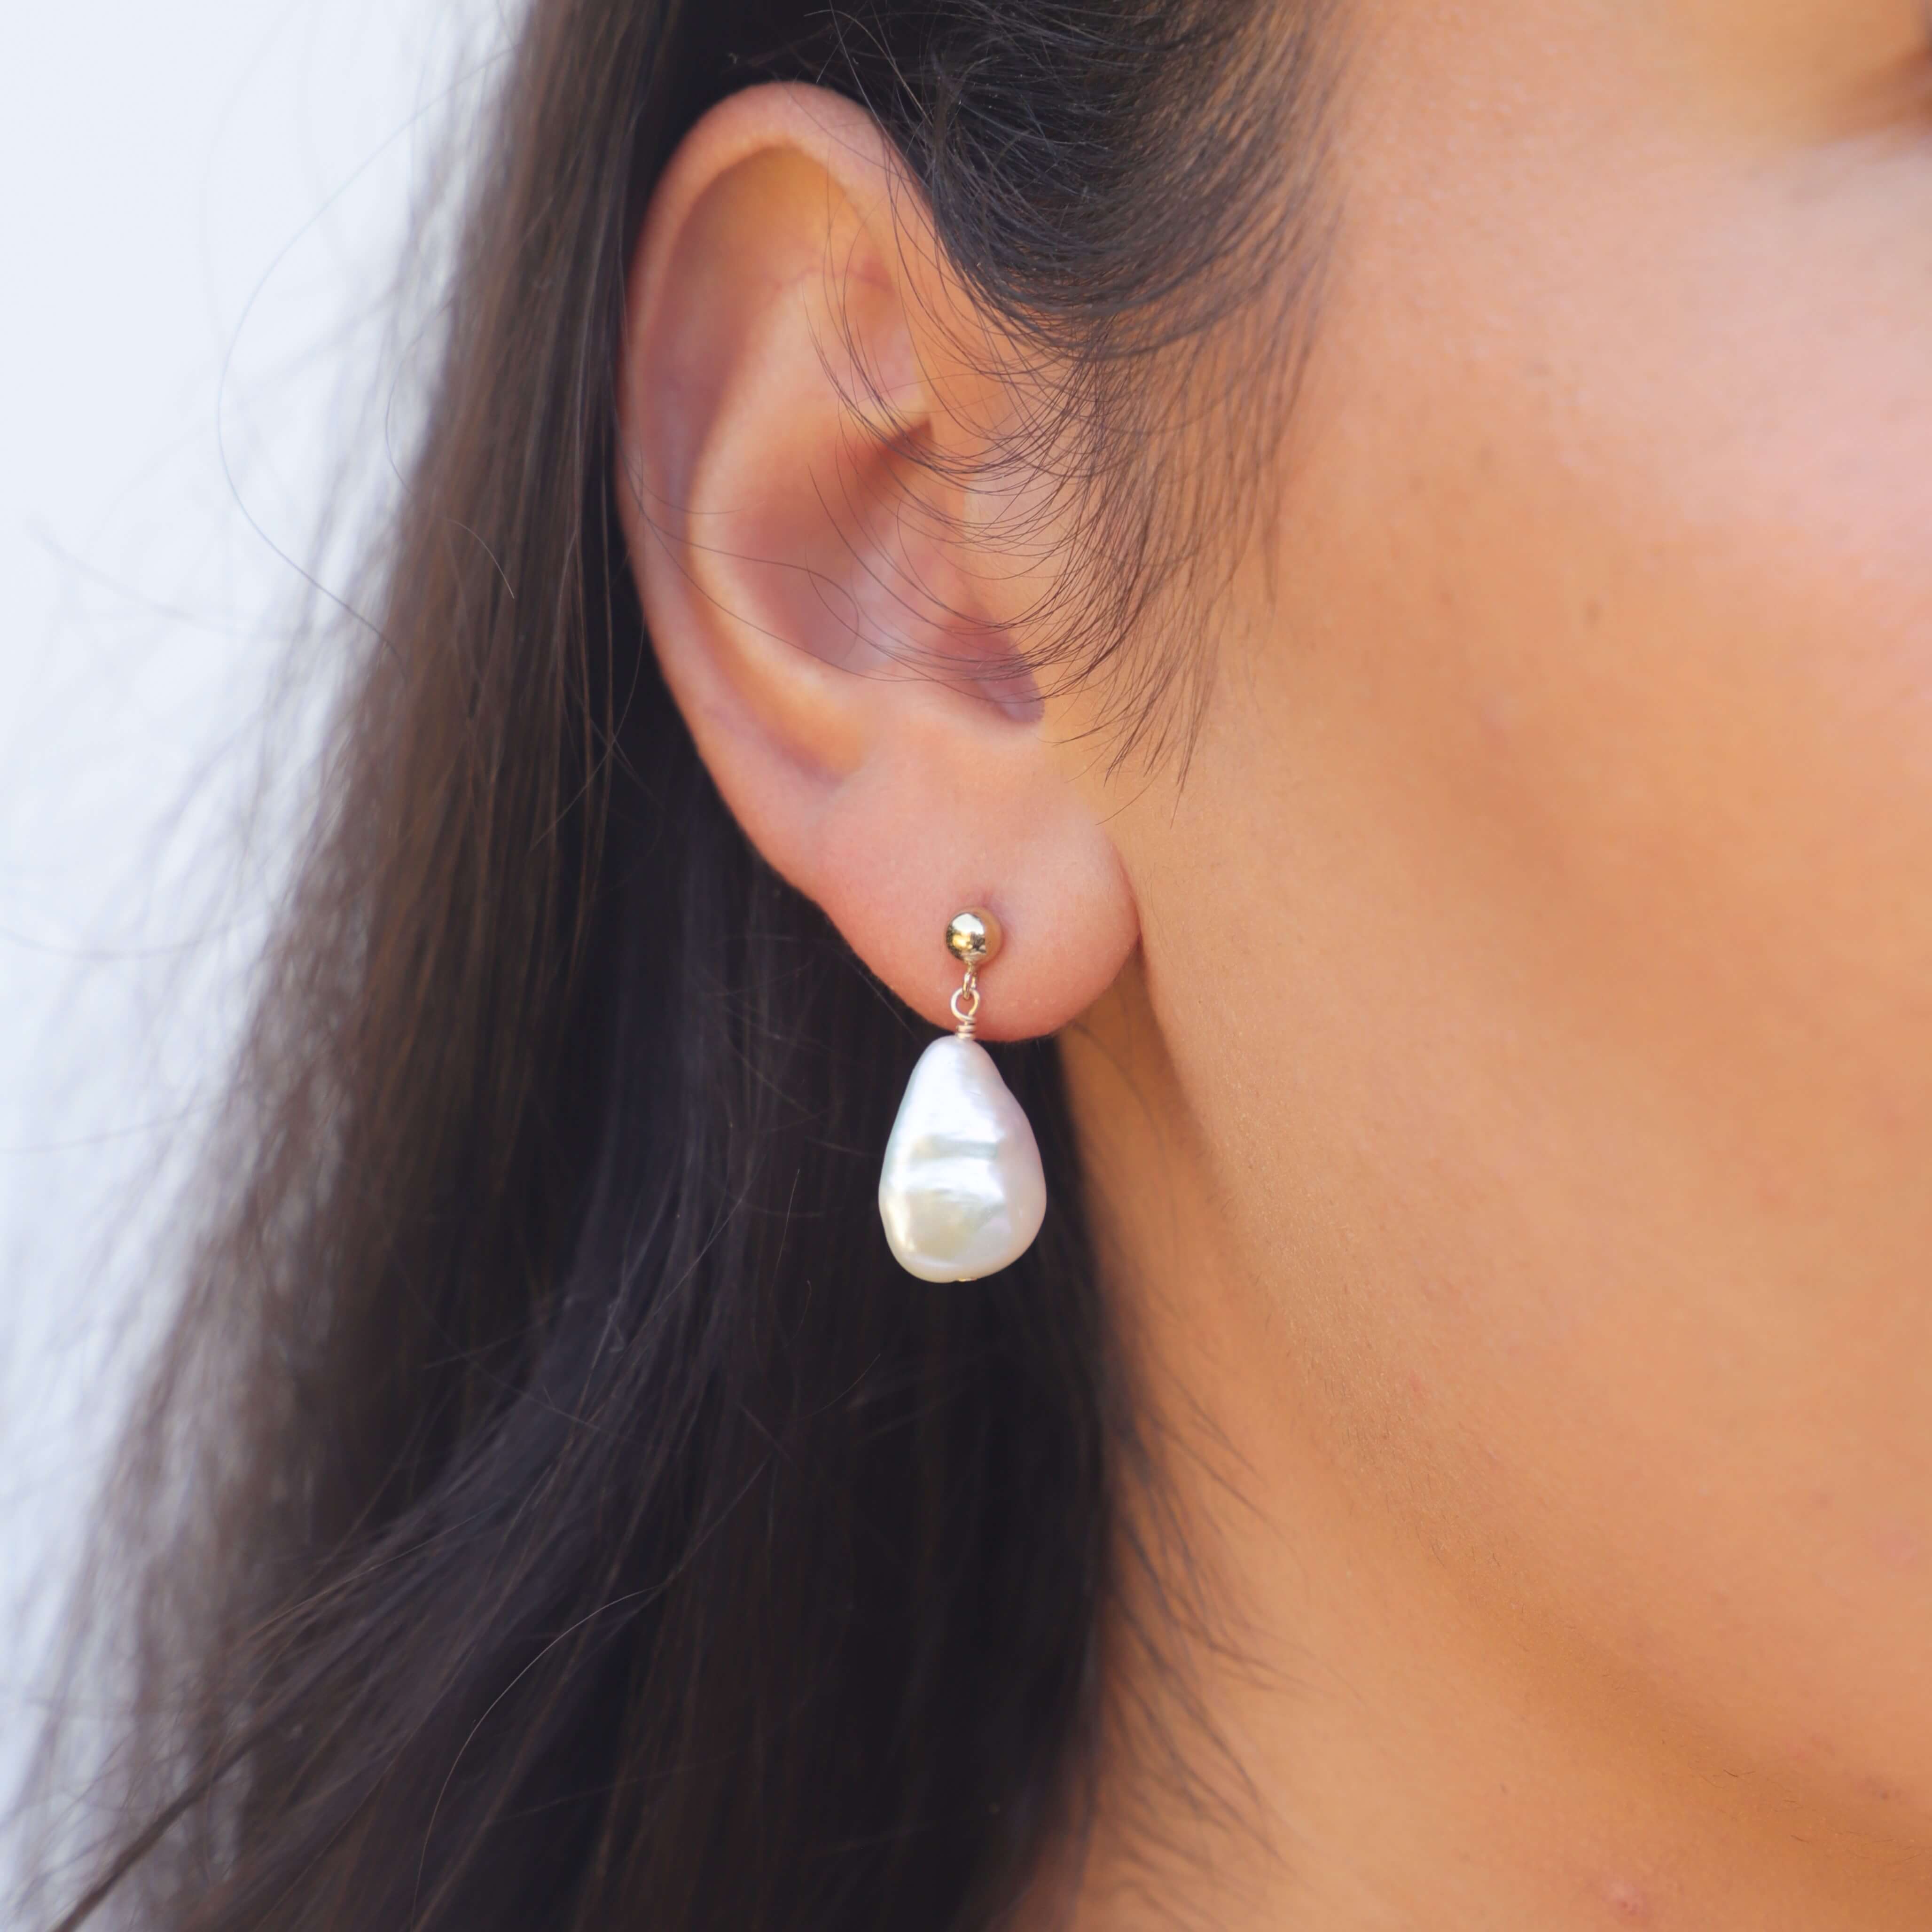 teardrop pearl earring on model's ear